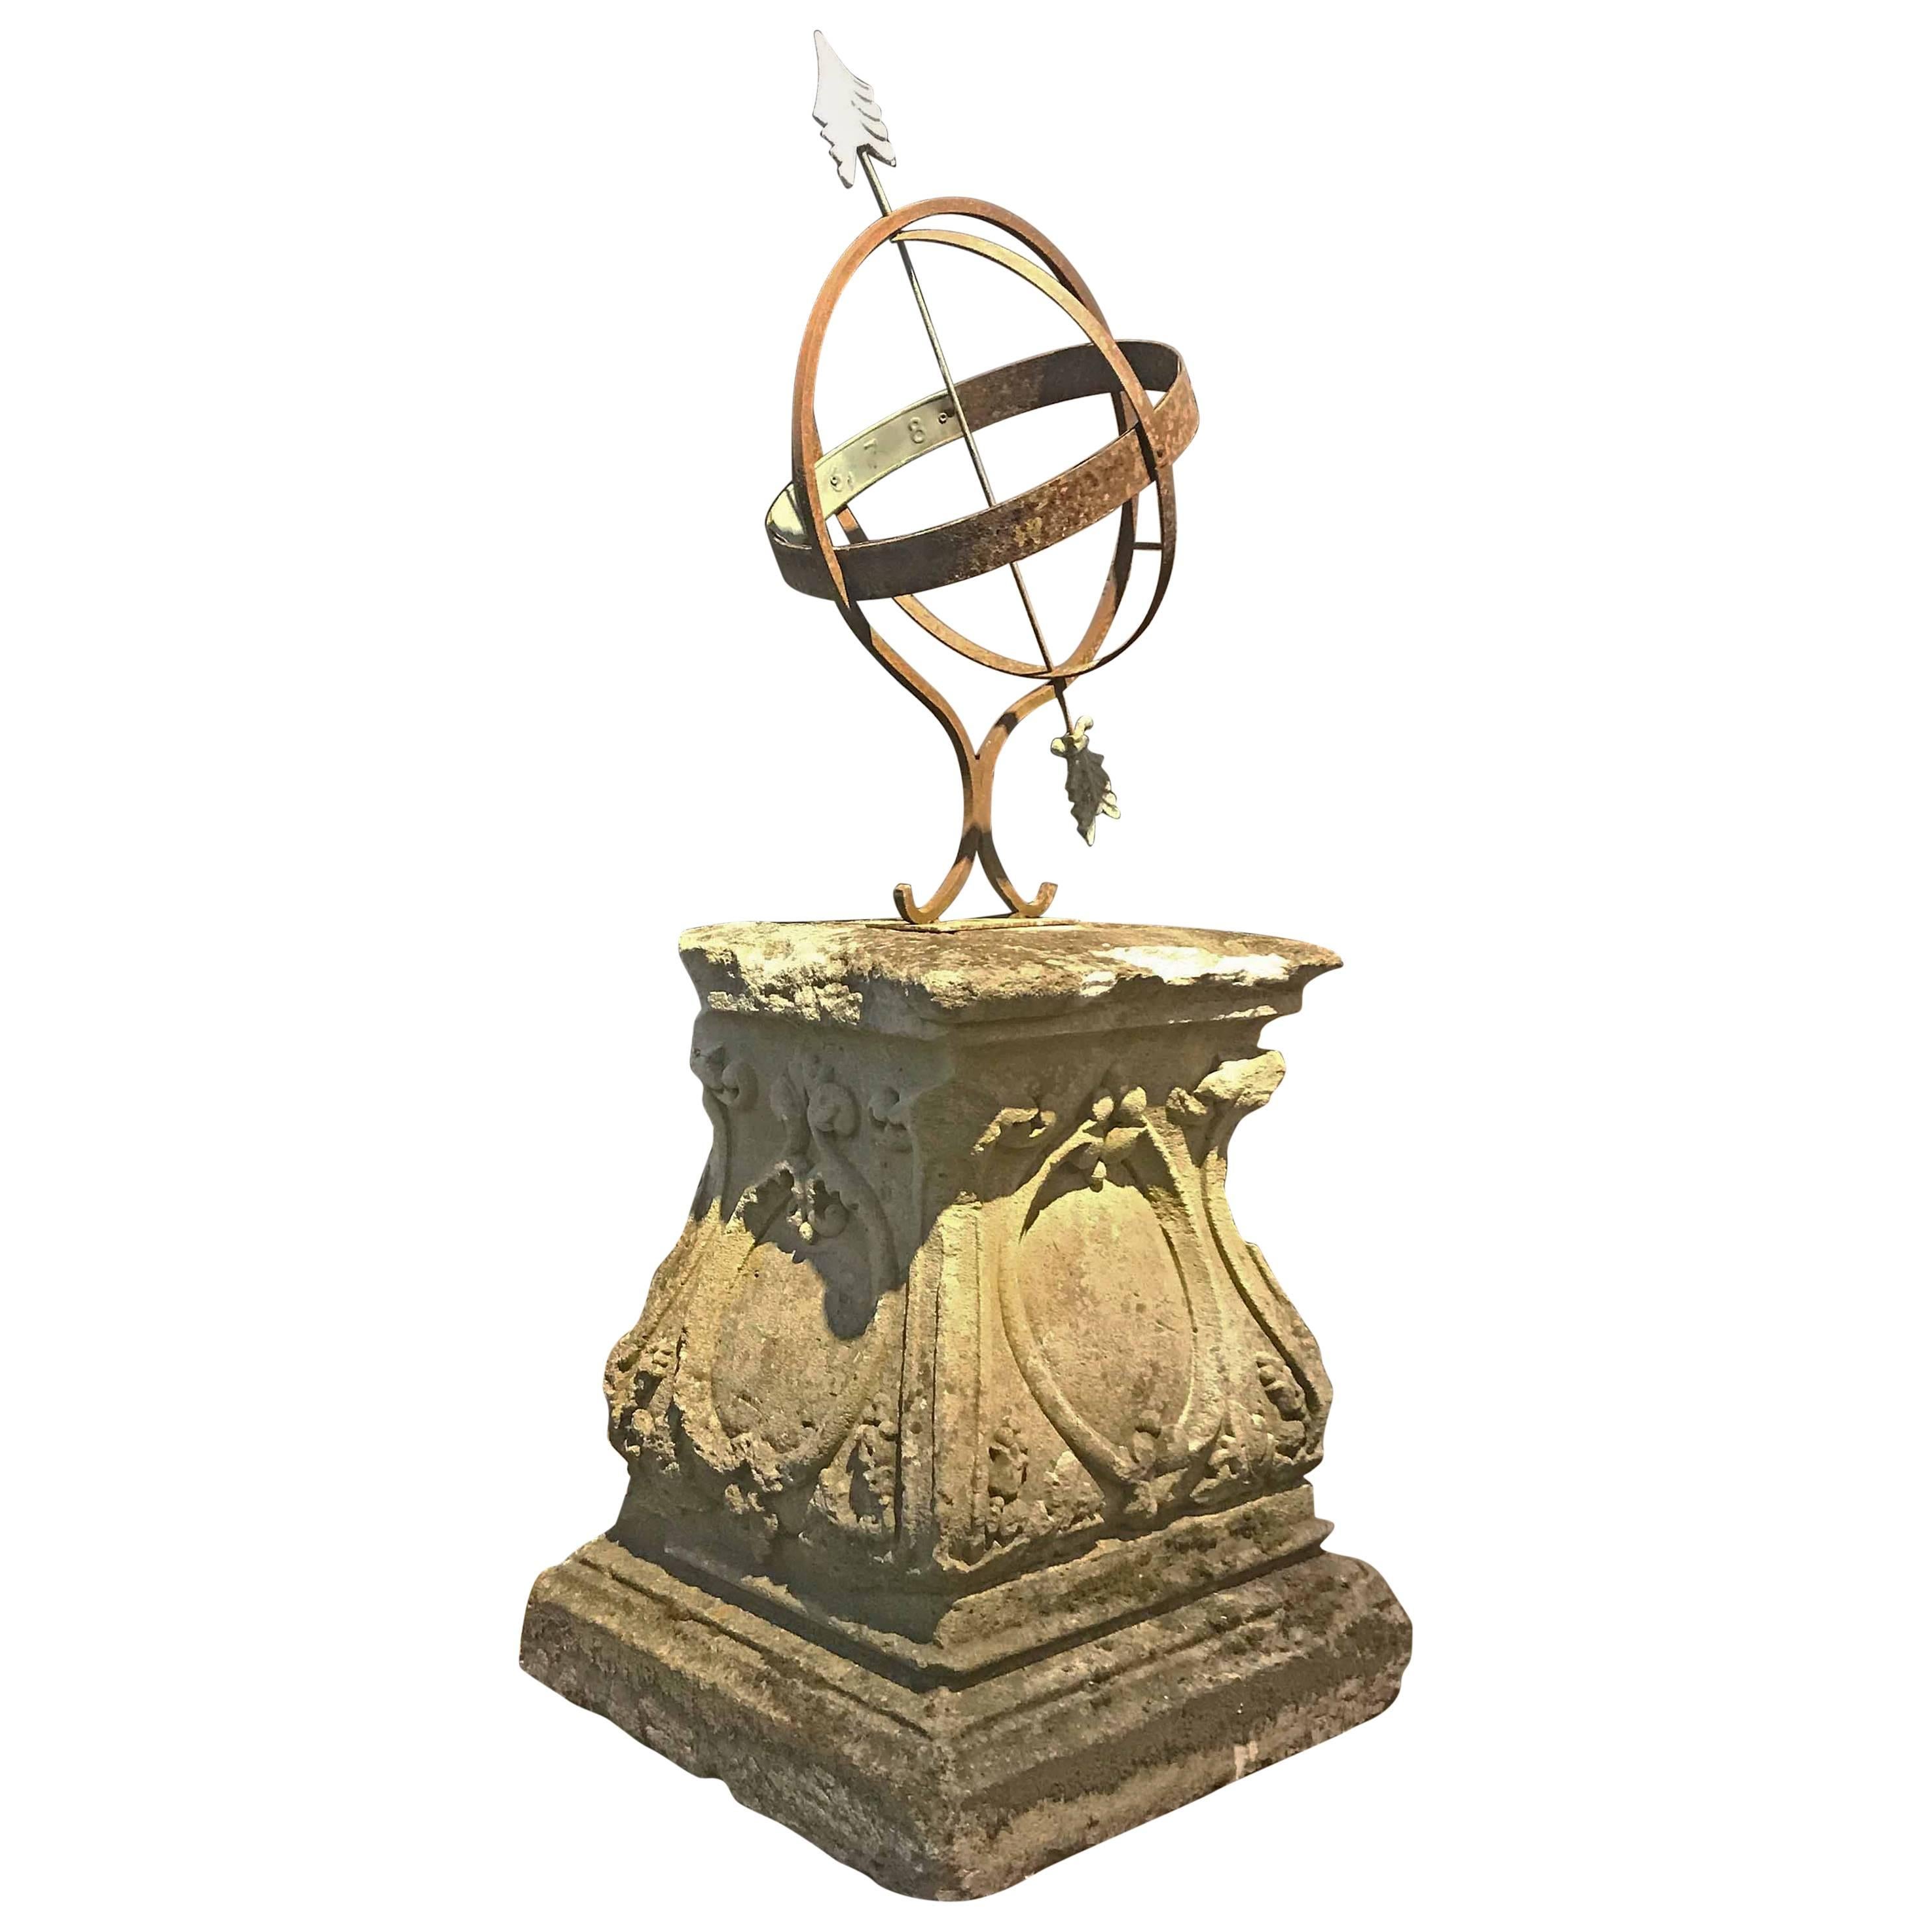 European Antique Sun Dial, circa 1500